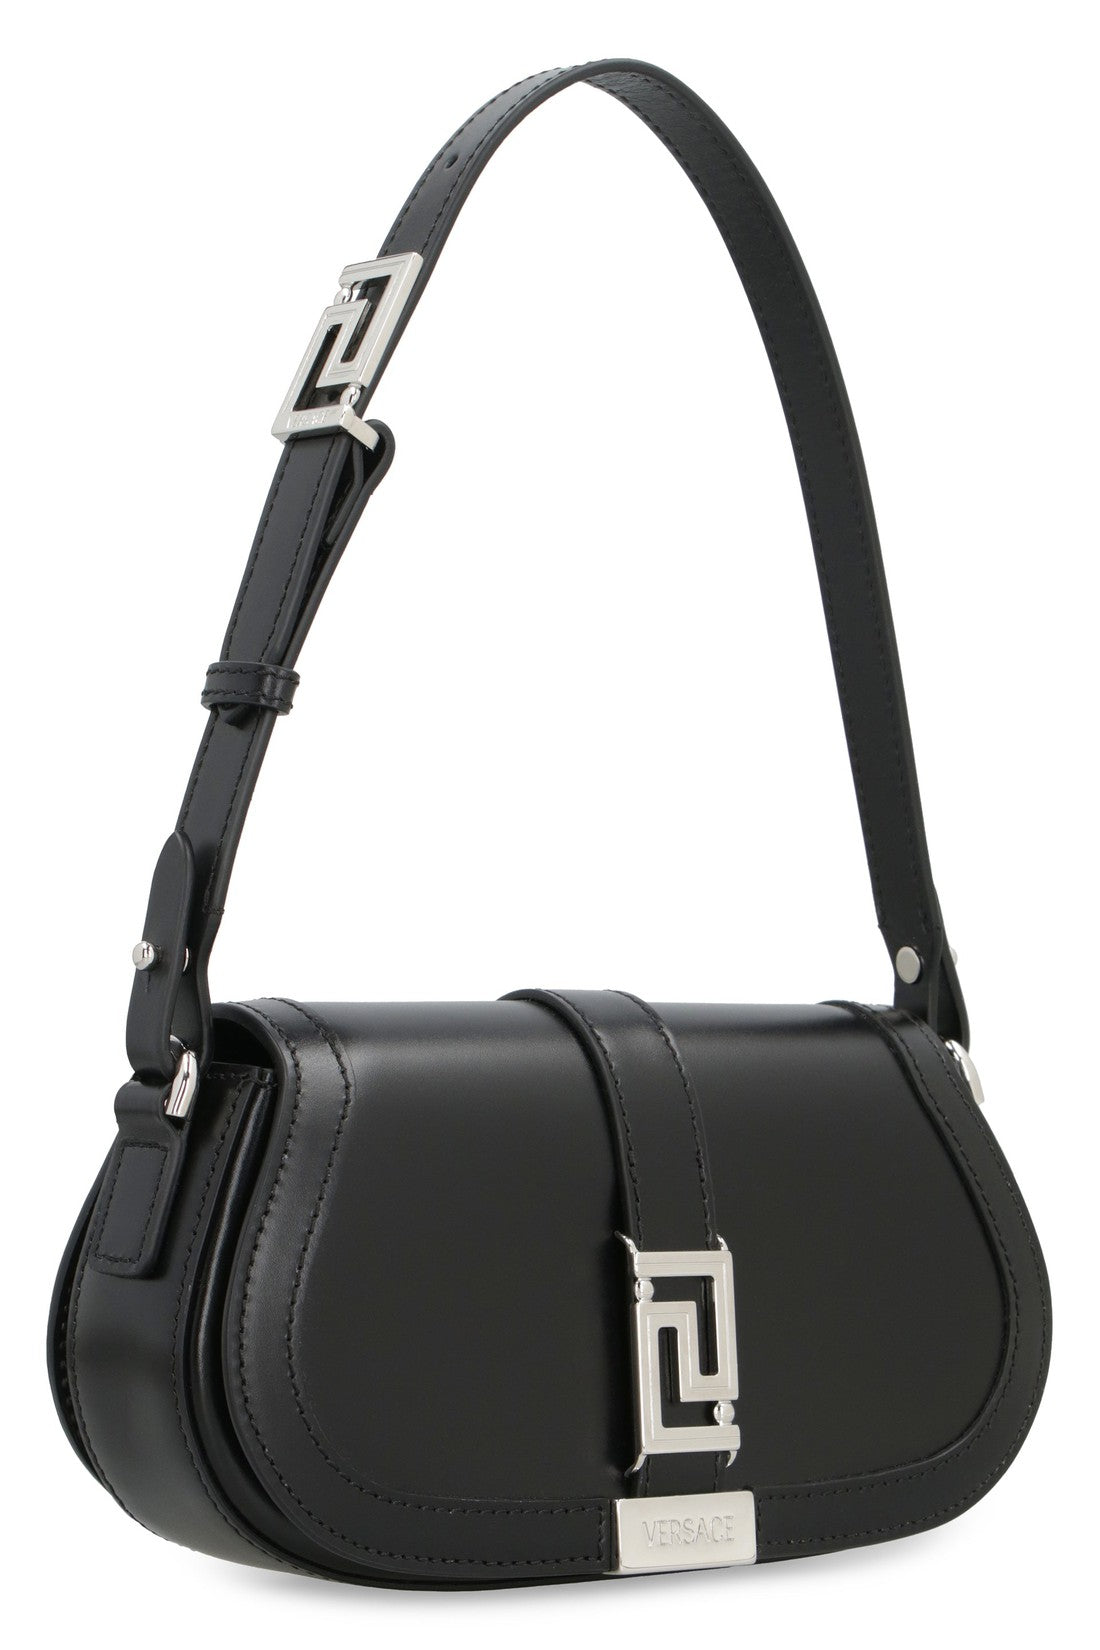 Versace-OUTLET-SALE-Greca Goddess mini leather shoulder bag-ARCHIVIST